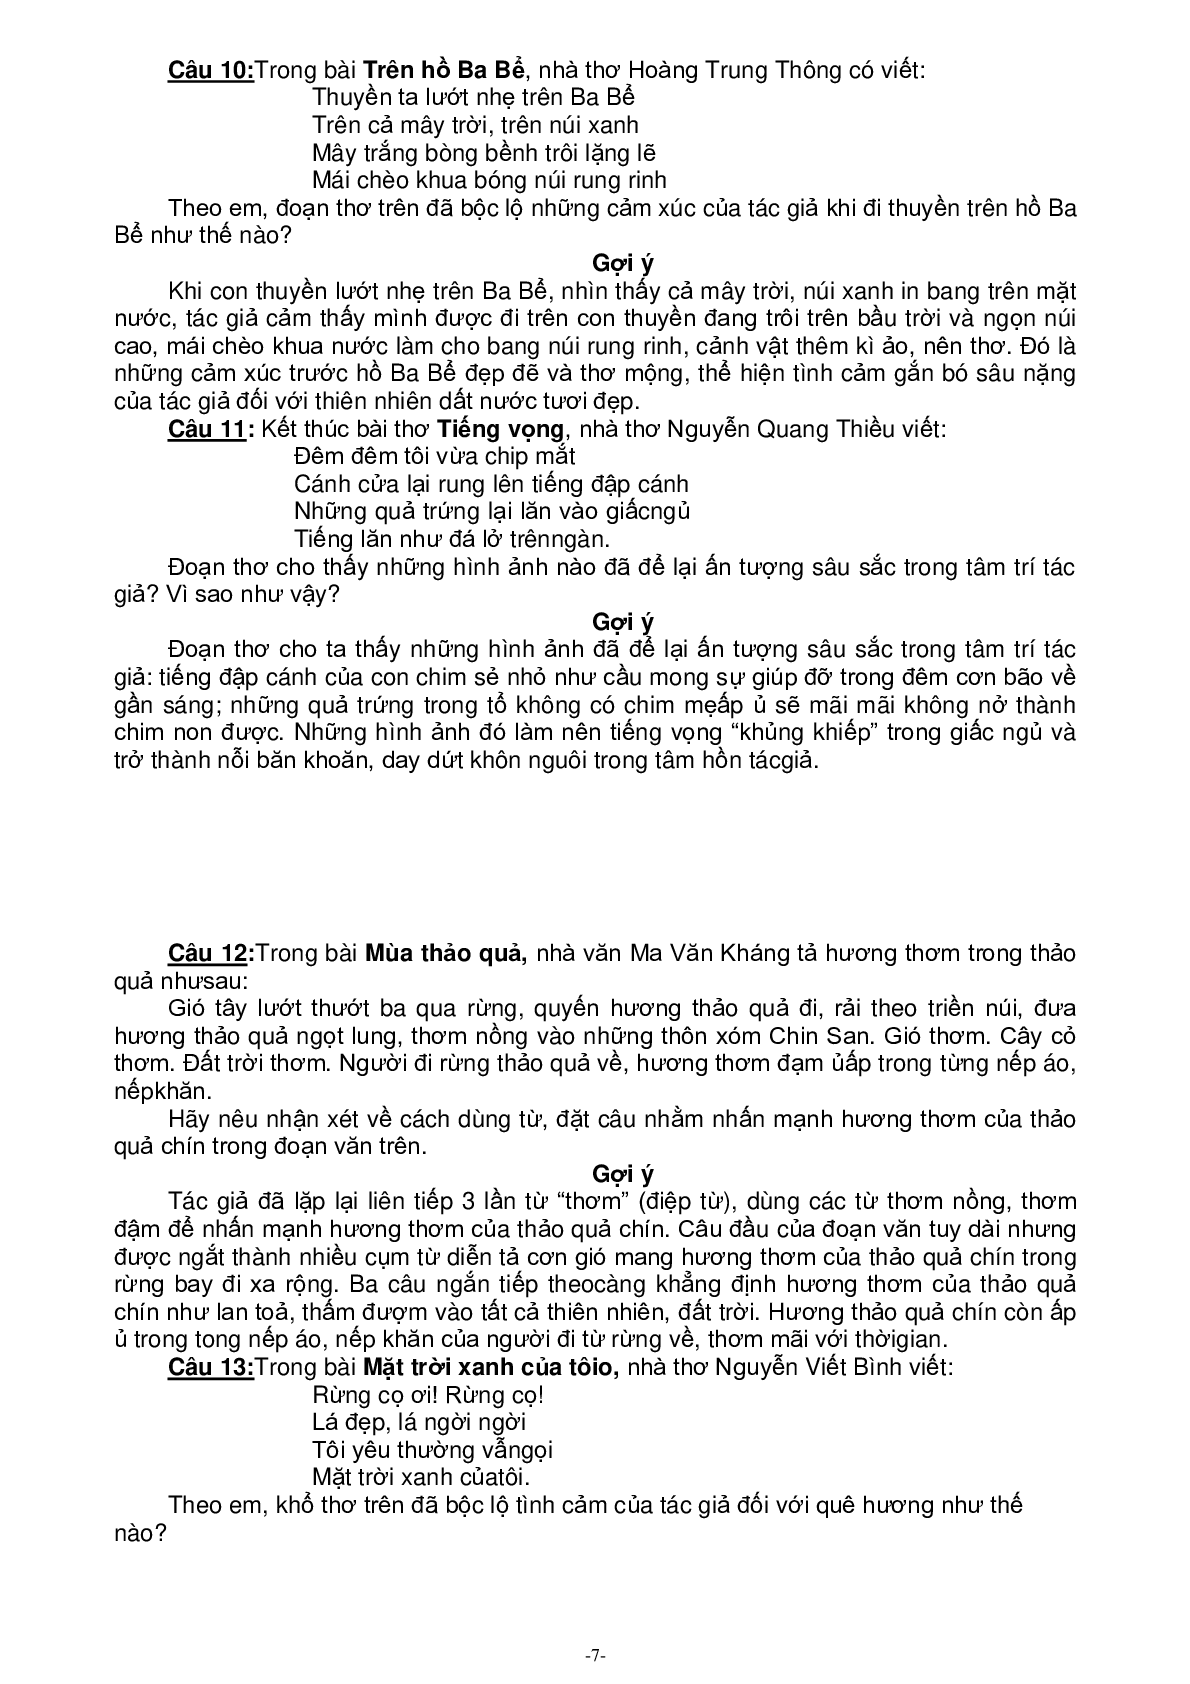 88 đề văn cảm thụ môn Tiếng Việt lớp 5 (trang 7)